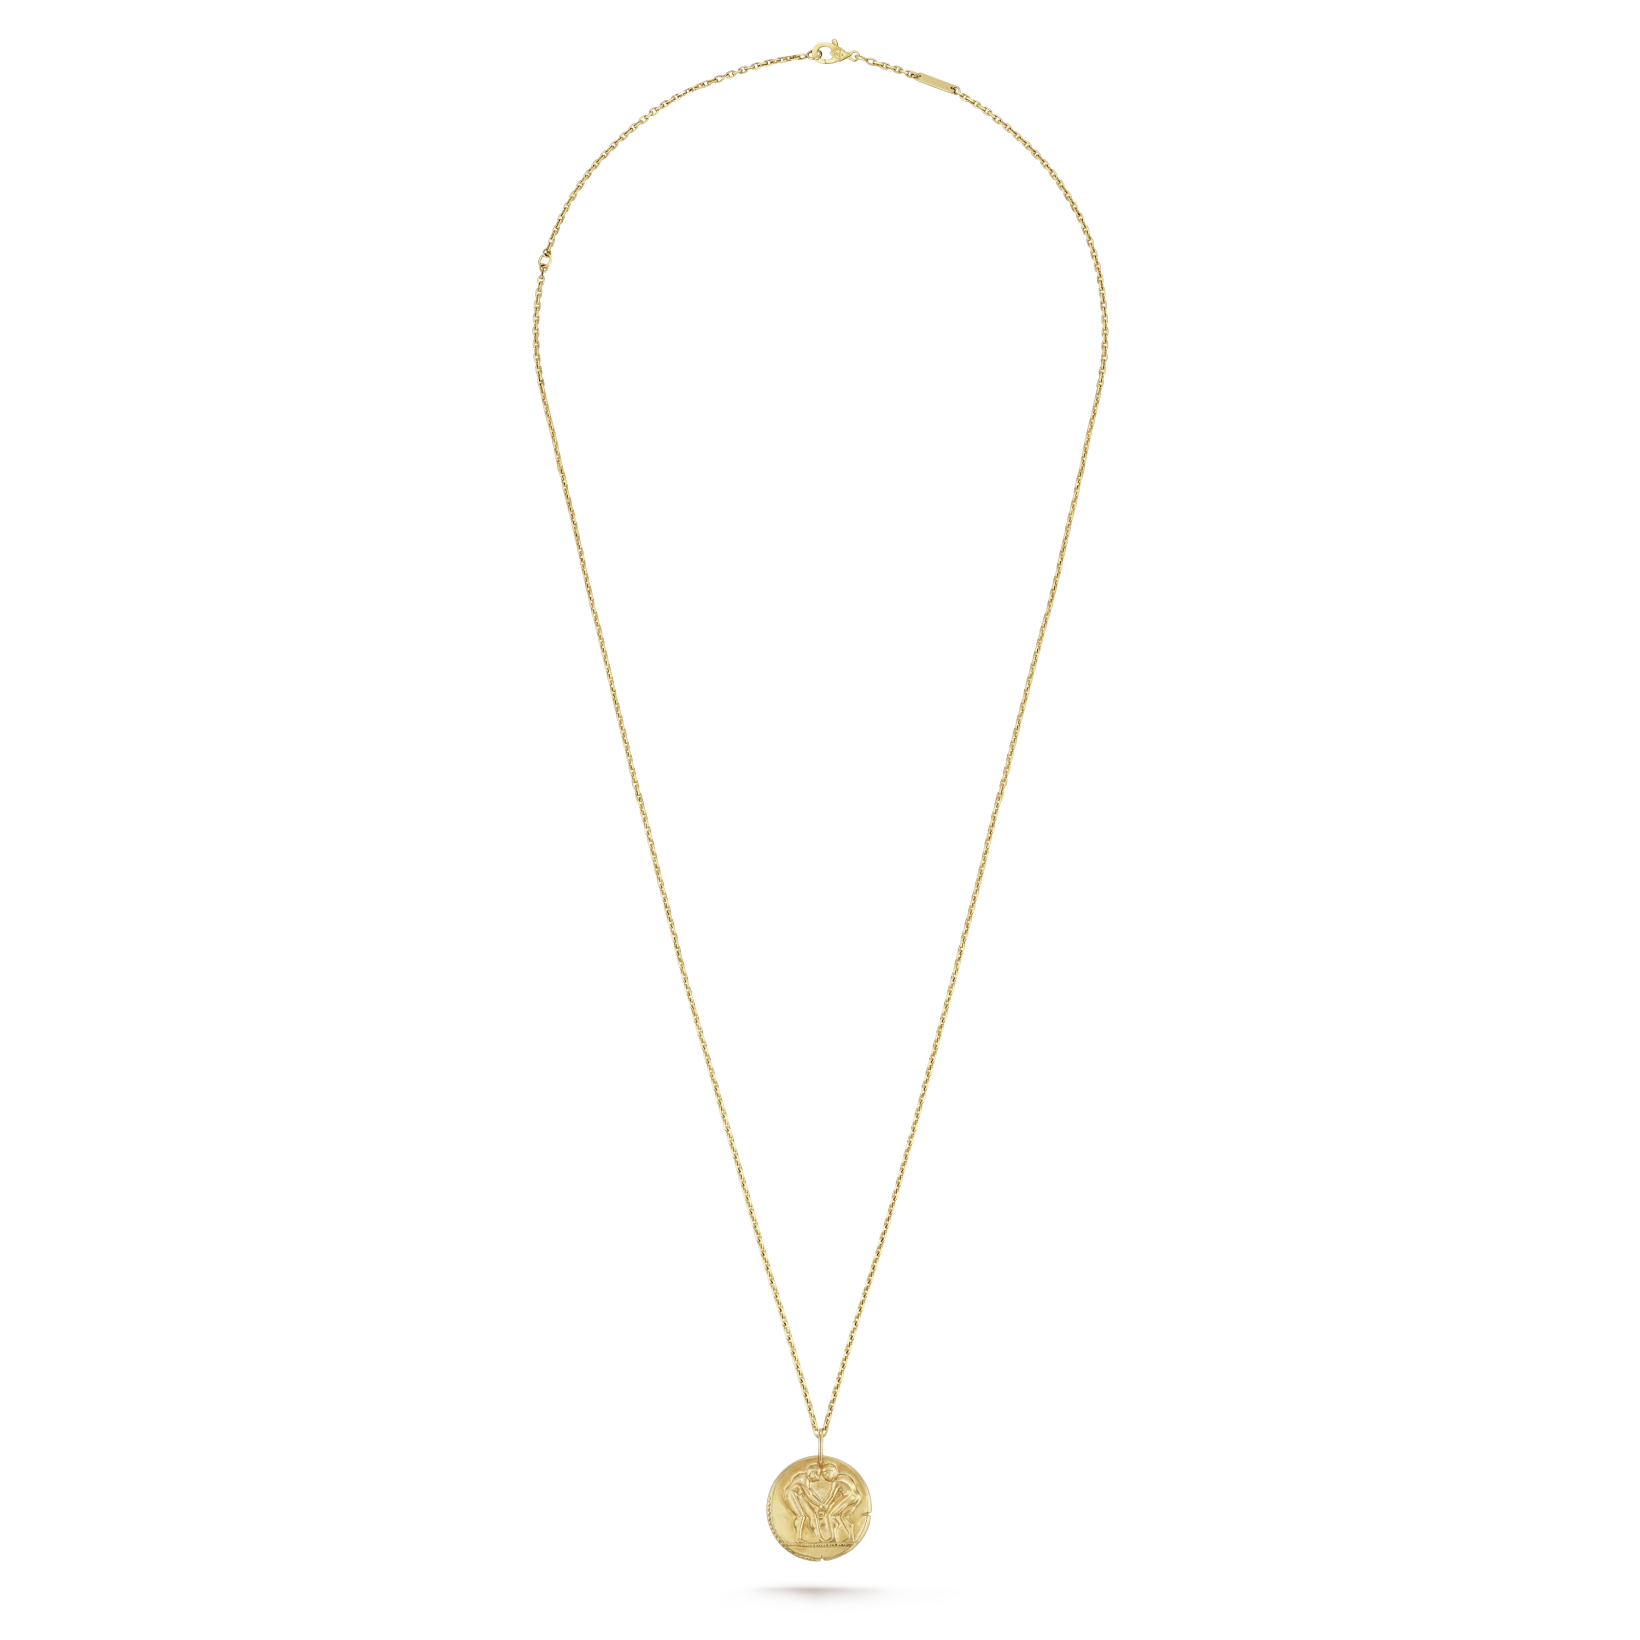 Zodiaque-medal-Geminorum-Gemini-4.webp